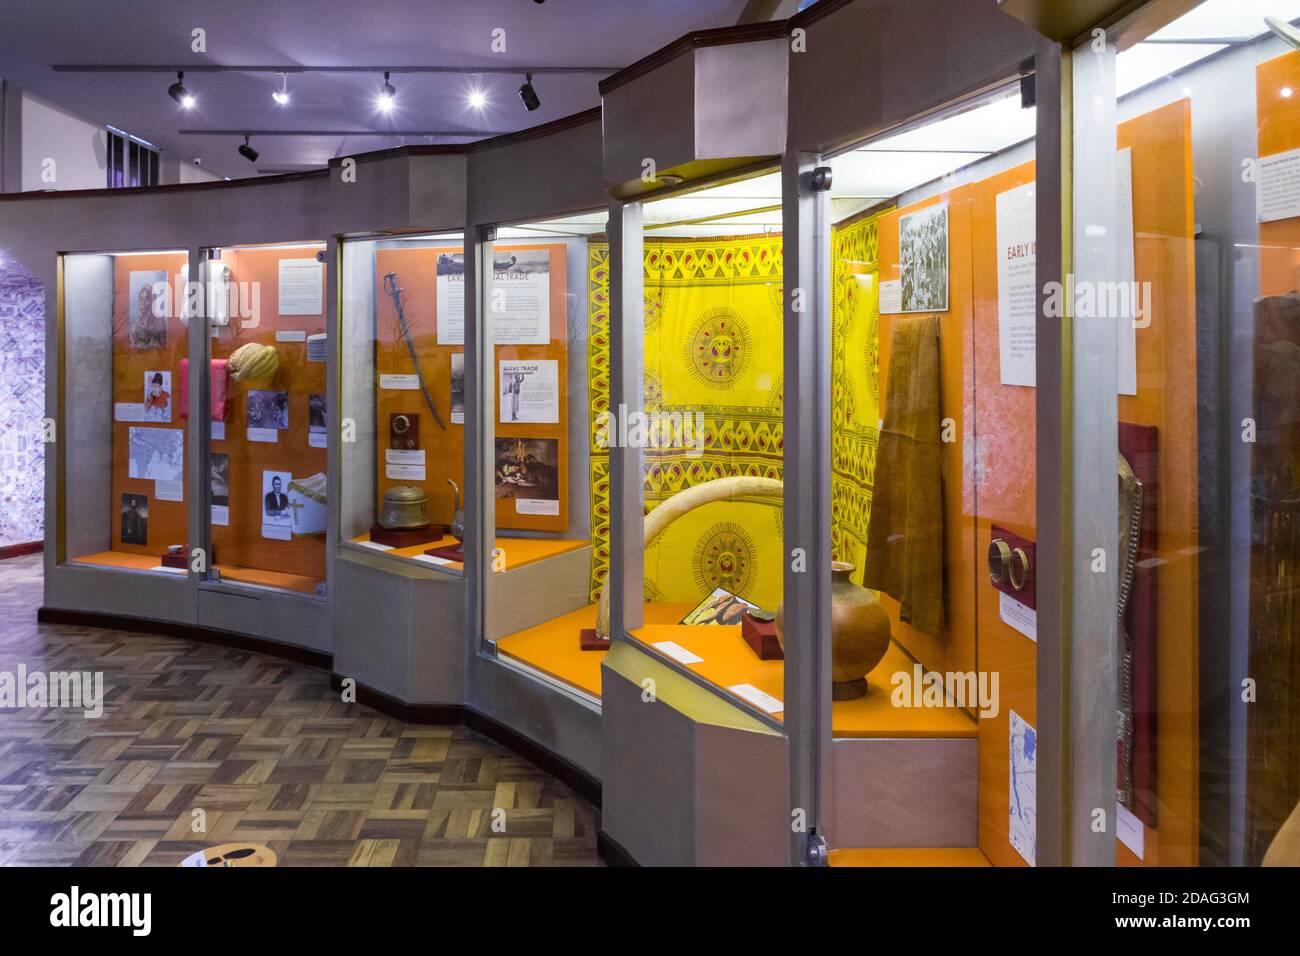 A display of Kenyan history and artefacts, Nairobi National Museum, Kenya Stock Photo